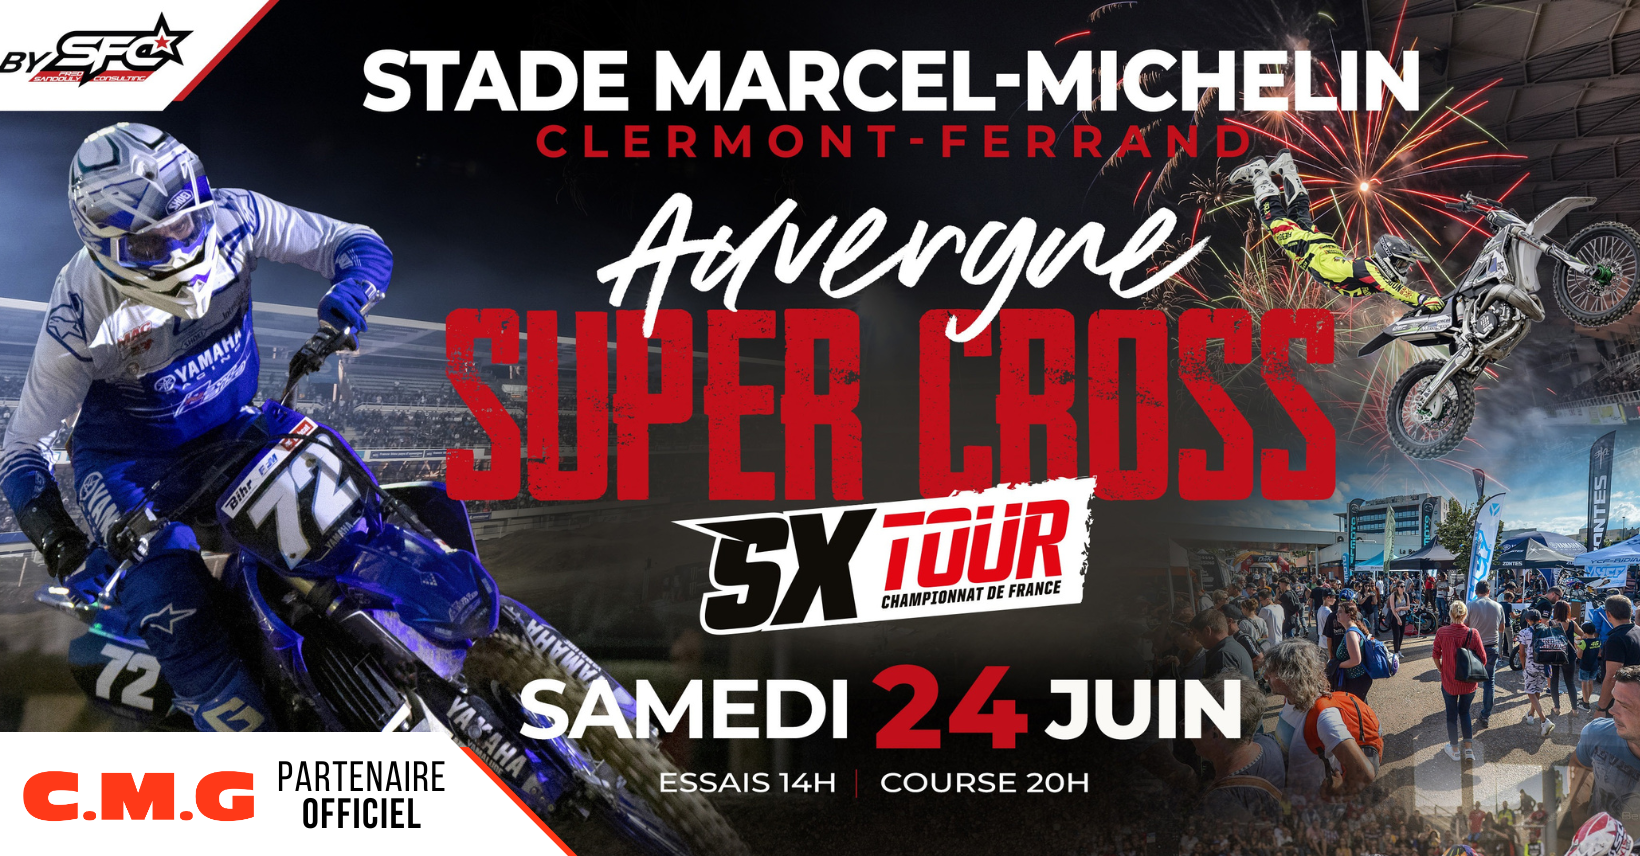 CMG Partenaire officiel du supercross auvergne qui se déroulera au stade Marcel Michelin ASM rugby le samedi 24 juin 2023